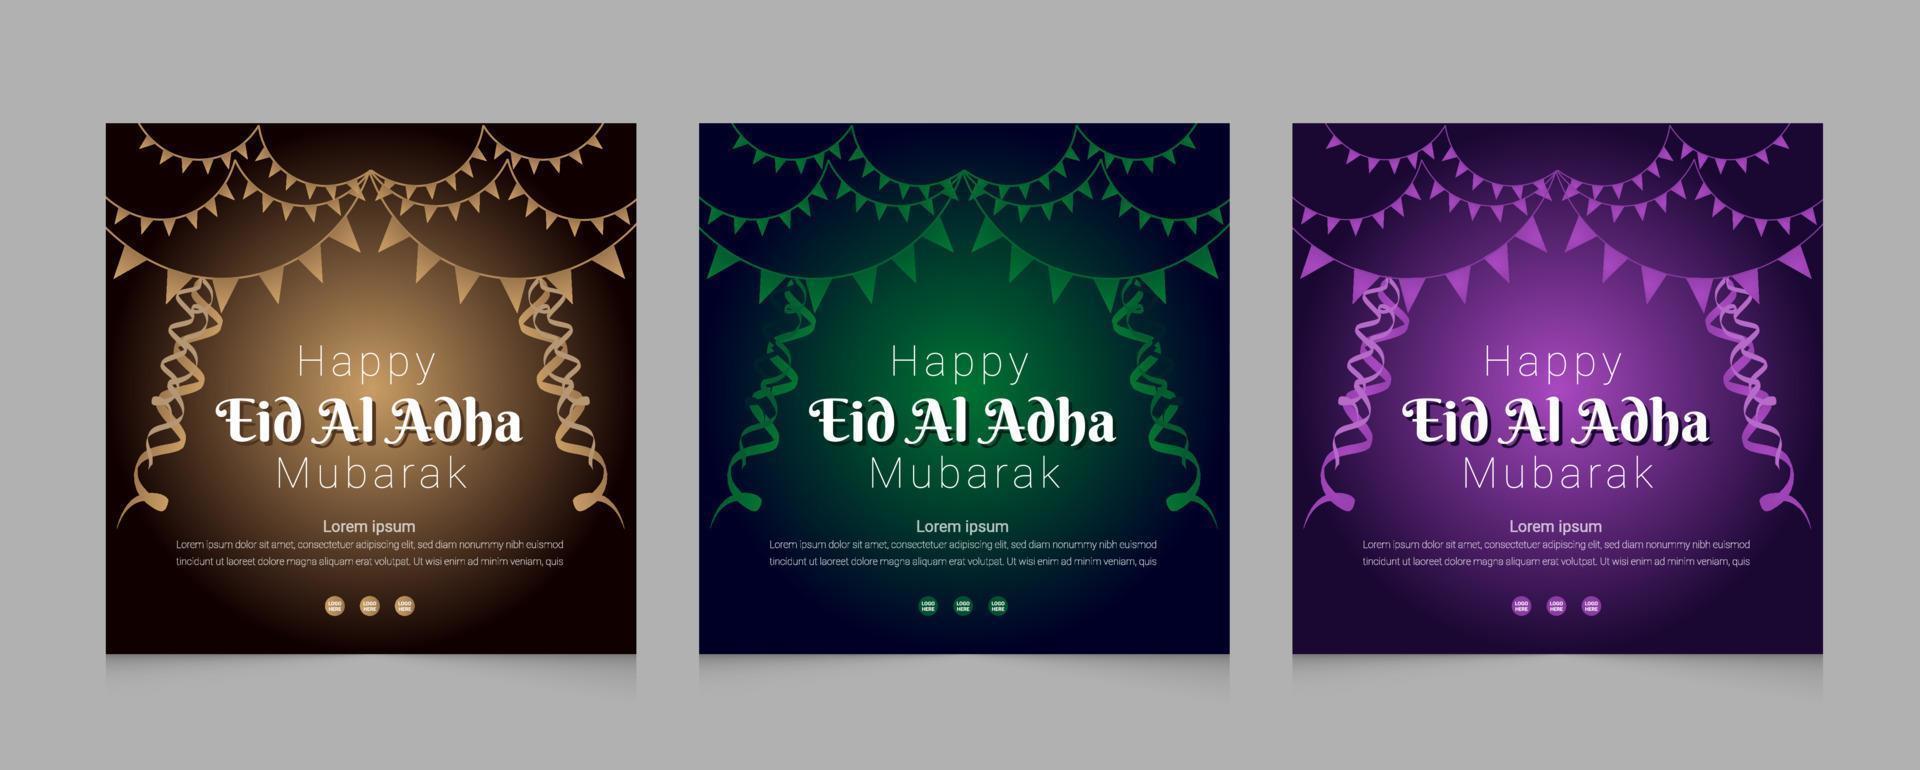 Eid Al Adha social media post web template design set vector